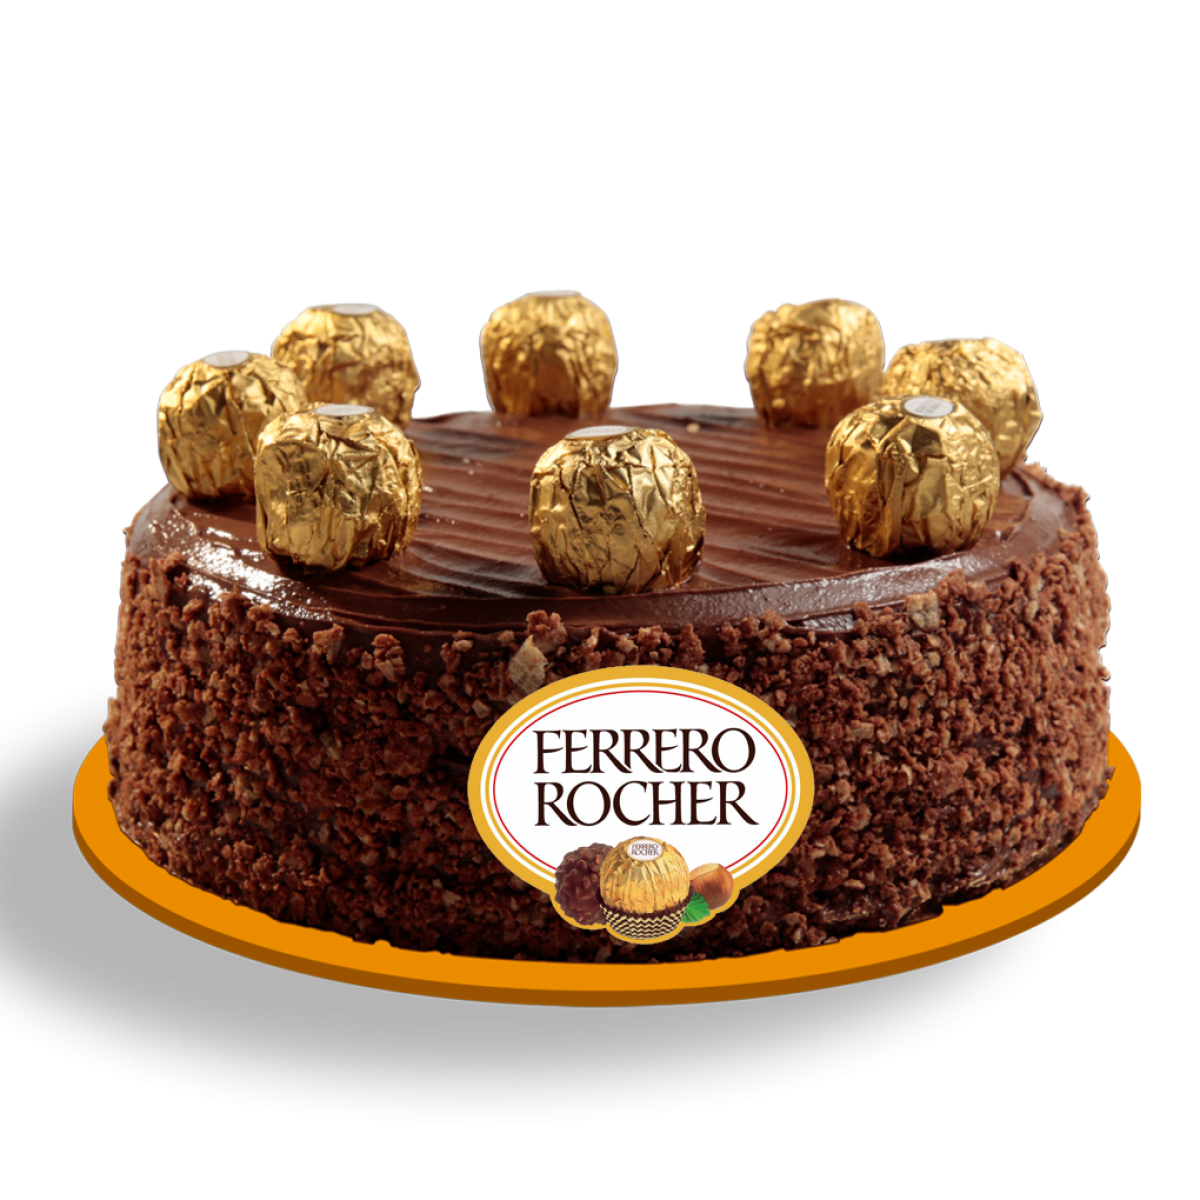 Ferrero Rocher Cake. – Chefjhoanes